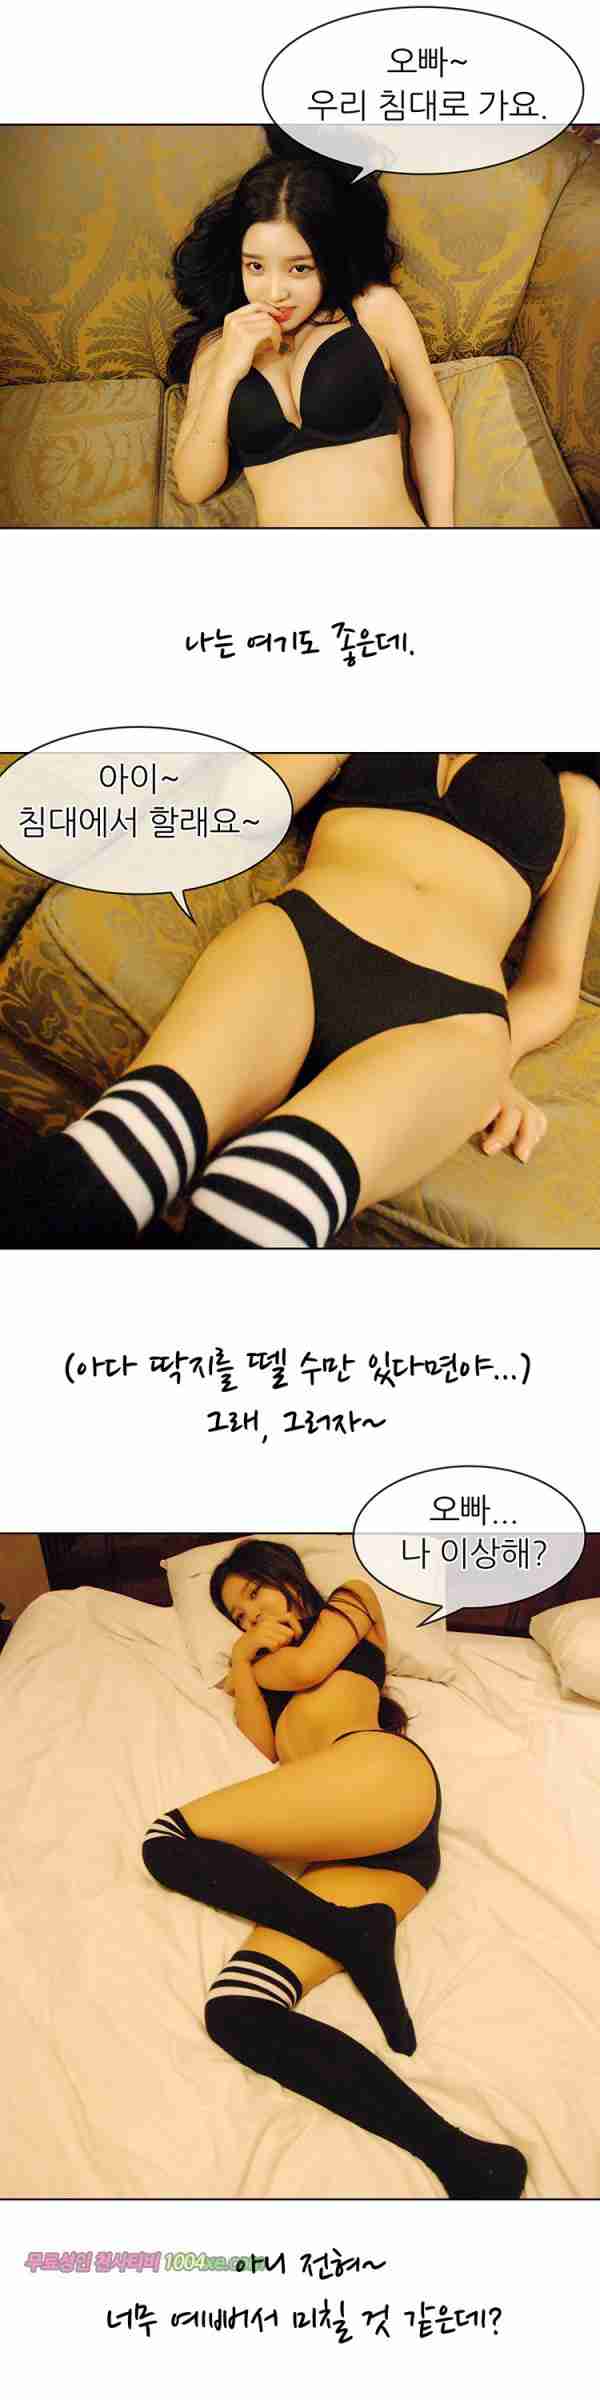 [韩国漫画]ID0015 韩国真人漫画15.rar--性感提示：令人迷醉丰乳夜店装